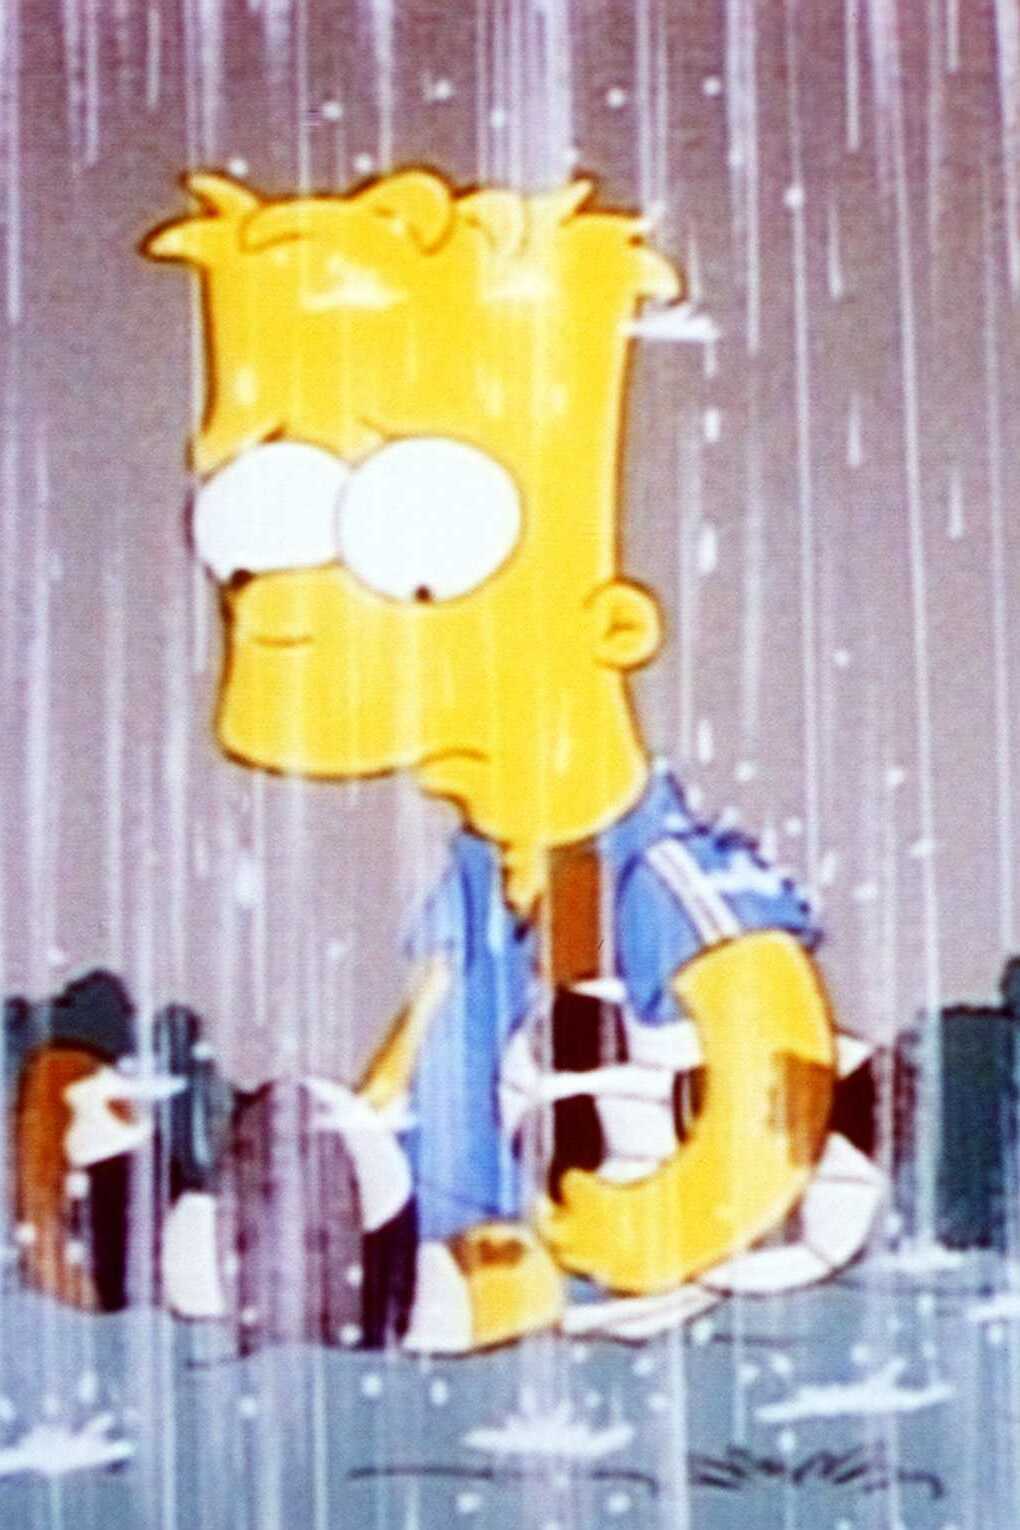 Les Simpson - Le grand frère